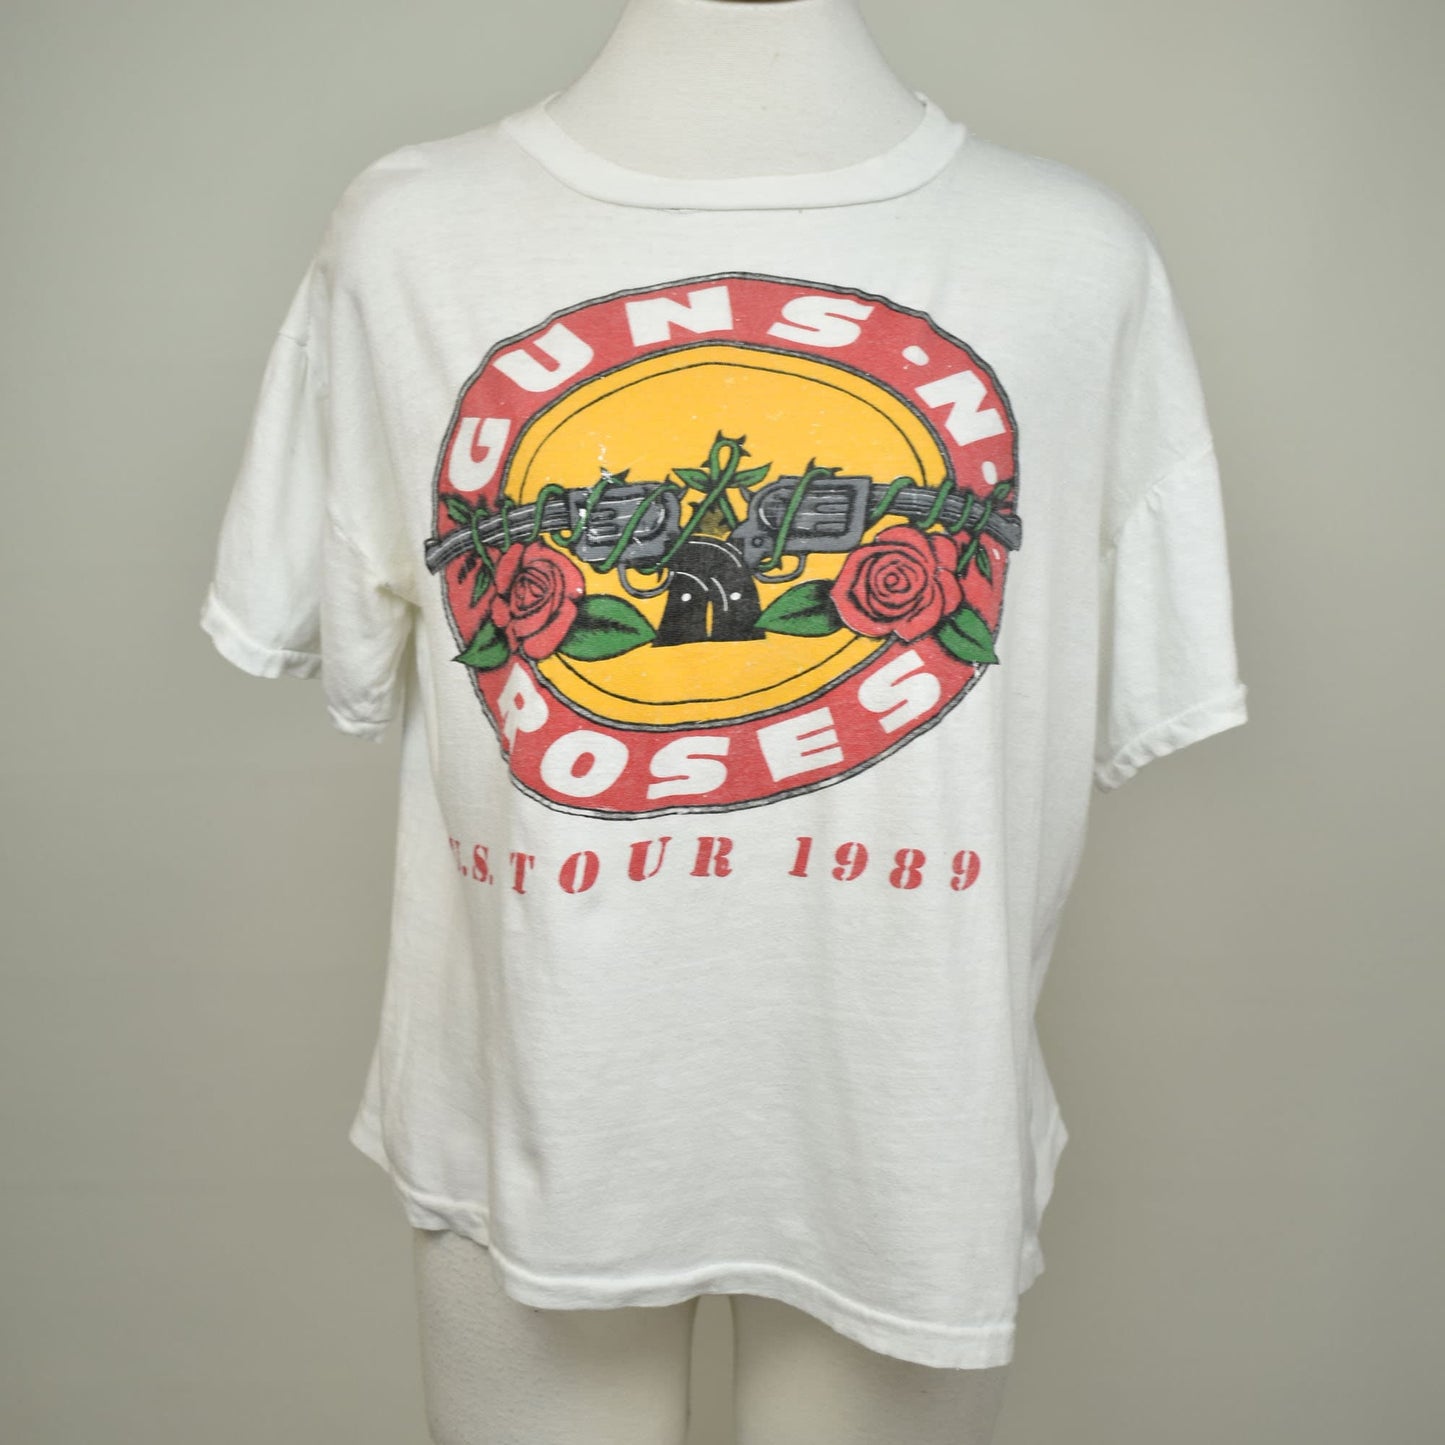 Vintage US Tour 1989 Guns N Roses T-shirt - Parking Lot Bootleg Shirt - Rock Tee - G'N'R